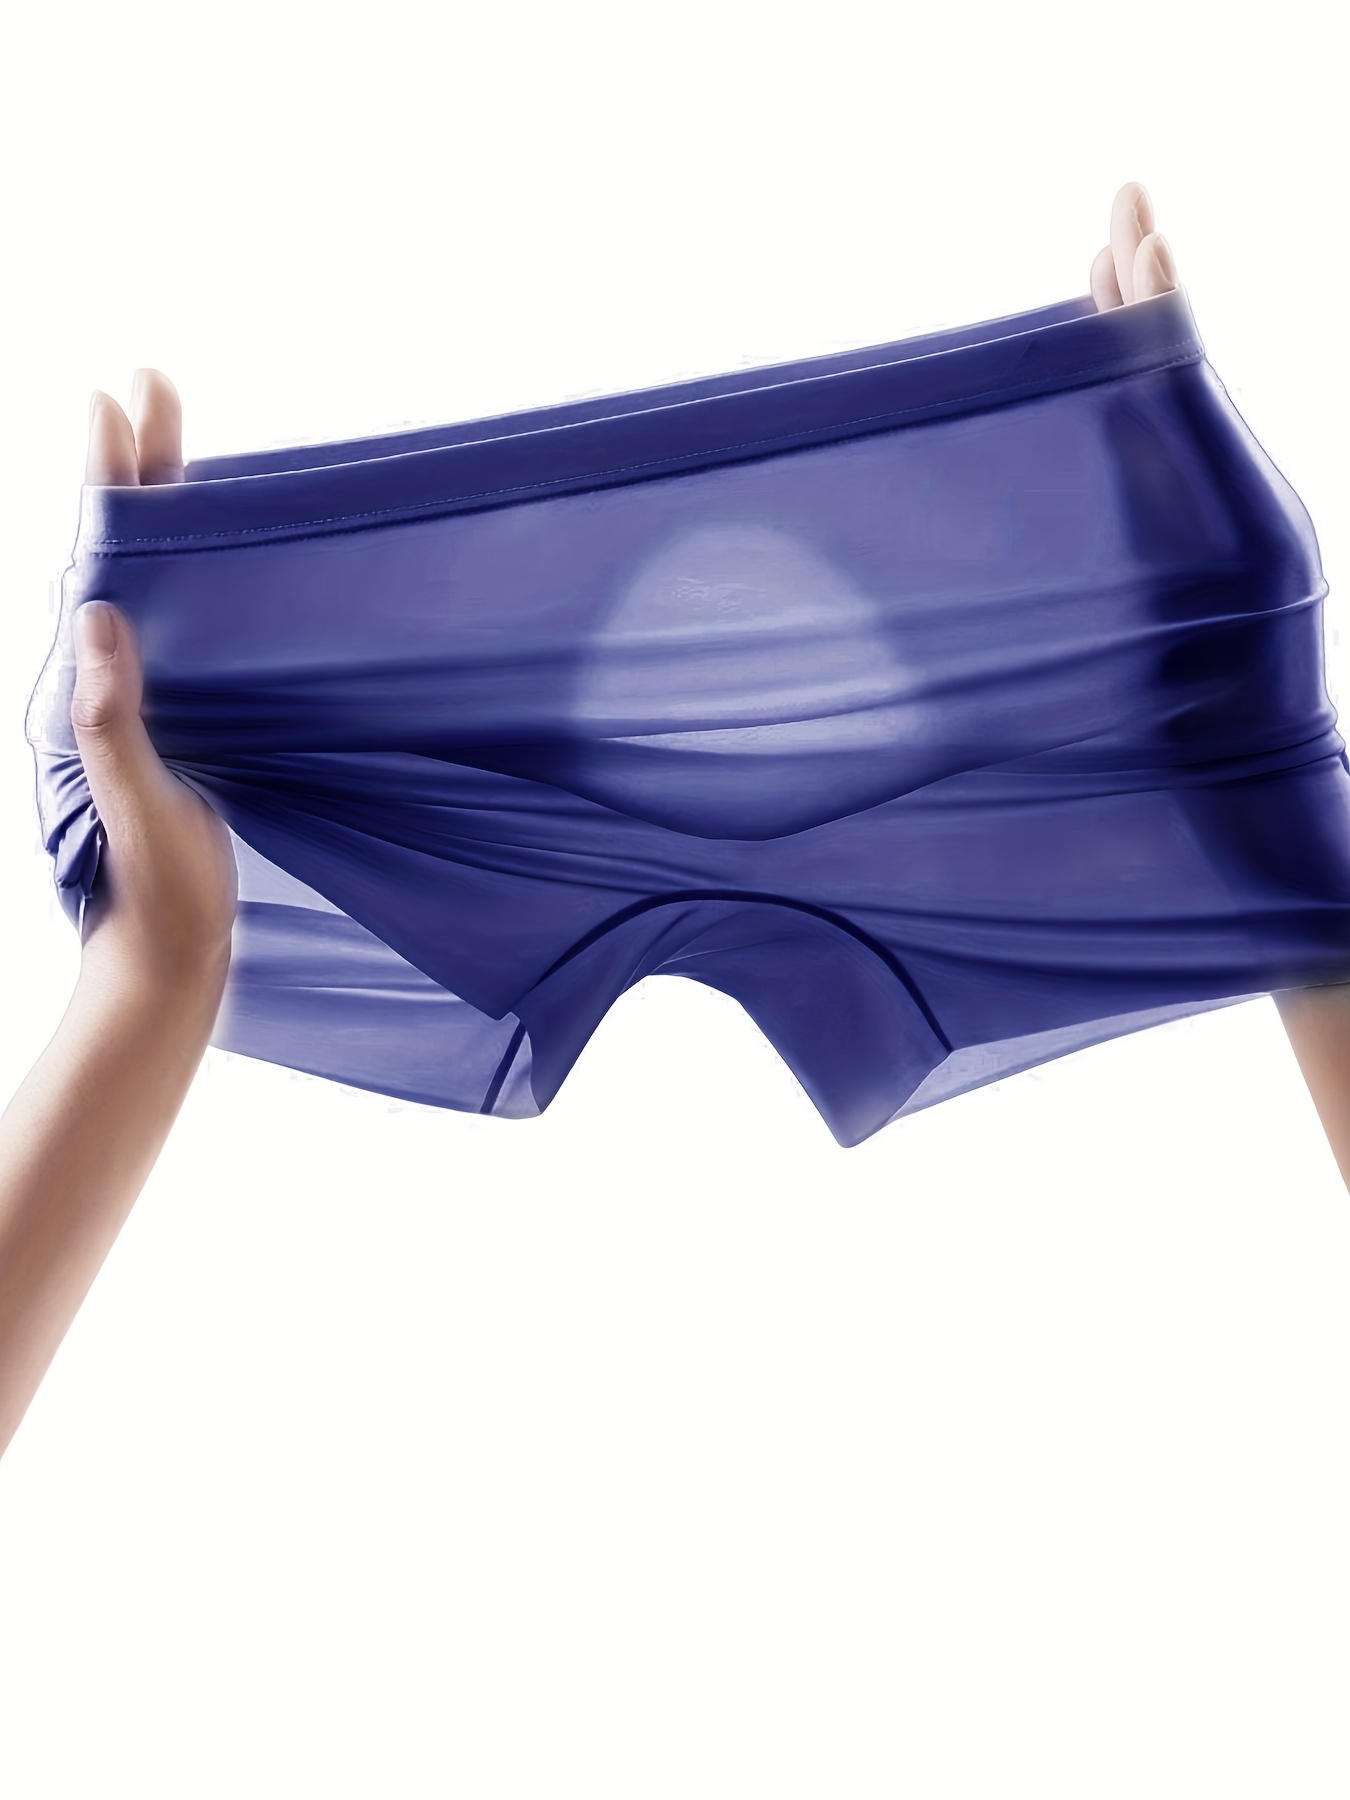 7 Packs Men Seamless Underwear Ice Silk Sexy See-through Briefs